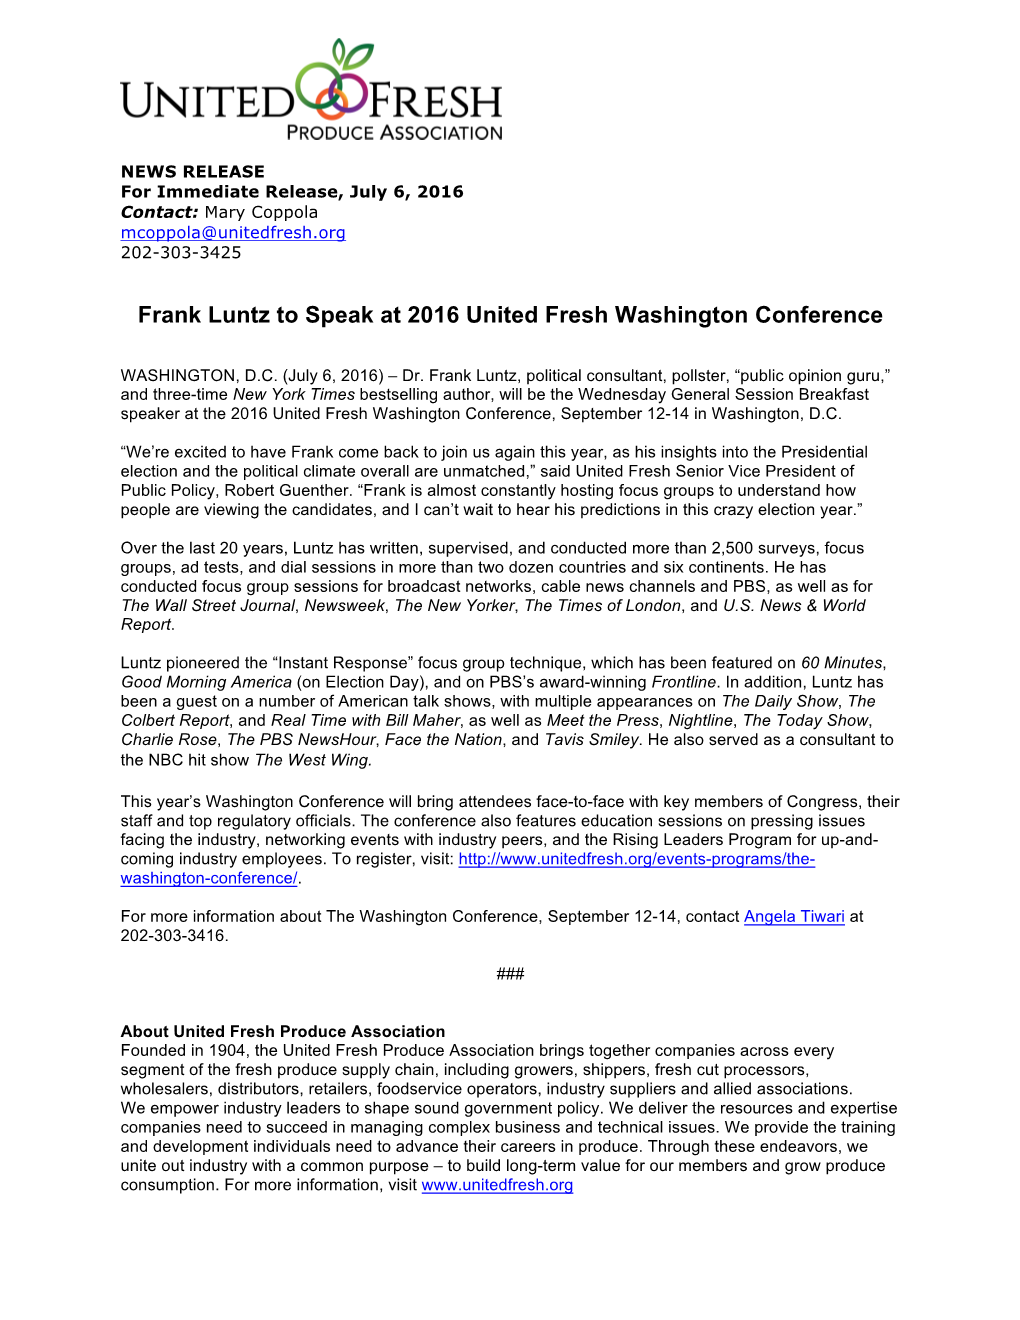 Frank Luntz to Speak at 2016 United Fresh Washington Conference